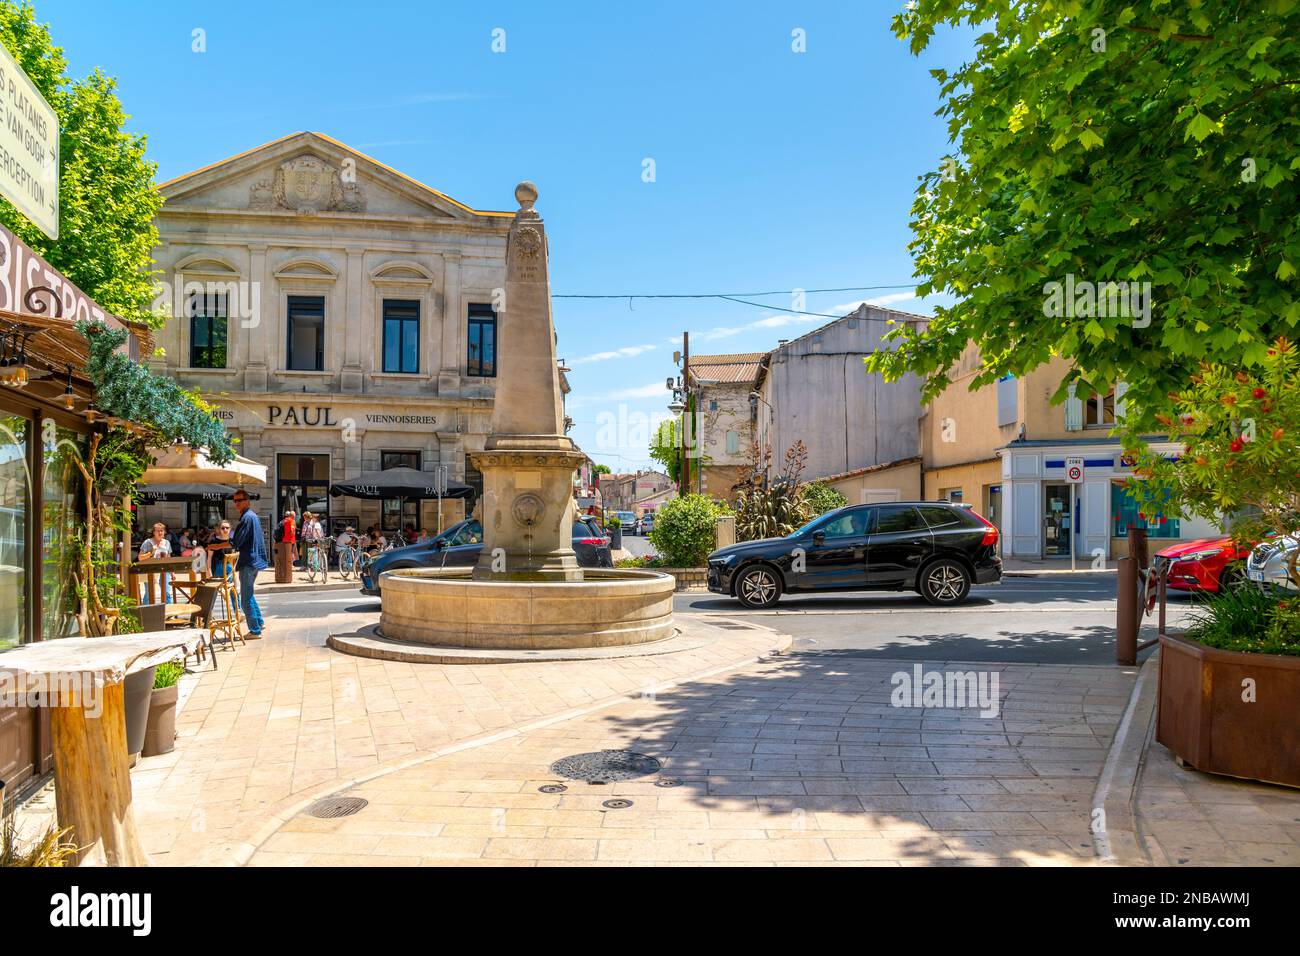 Una fontana con obelisco nel centro storico medievale della città idilliaca di Saint-Remy-de-Provence, nella regione Provenza Costa Azzurra della Francia meridionale. Foto Stock